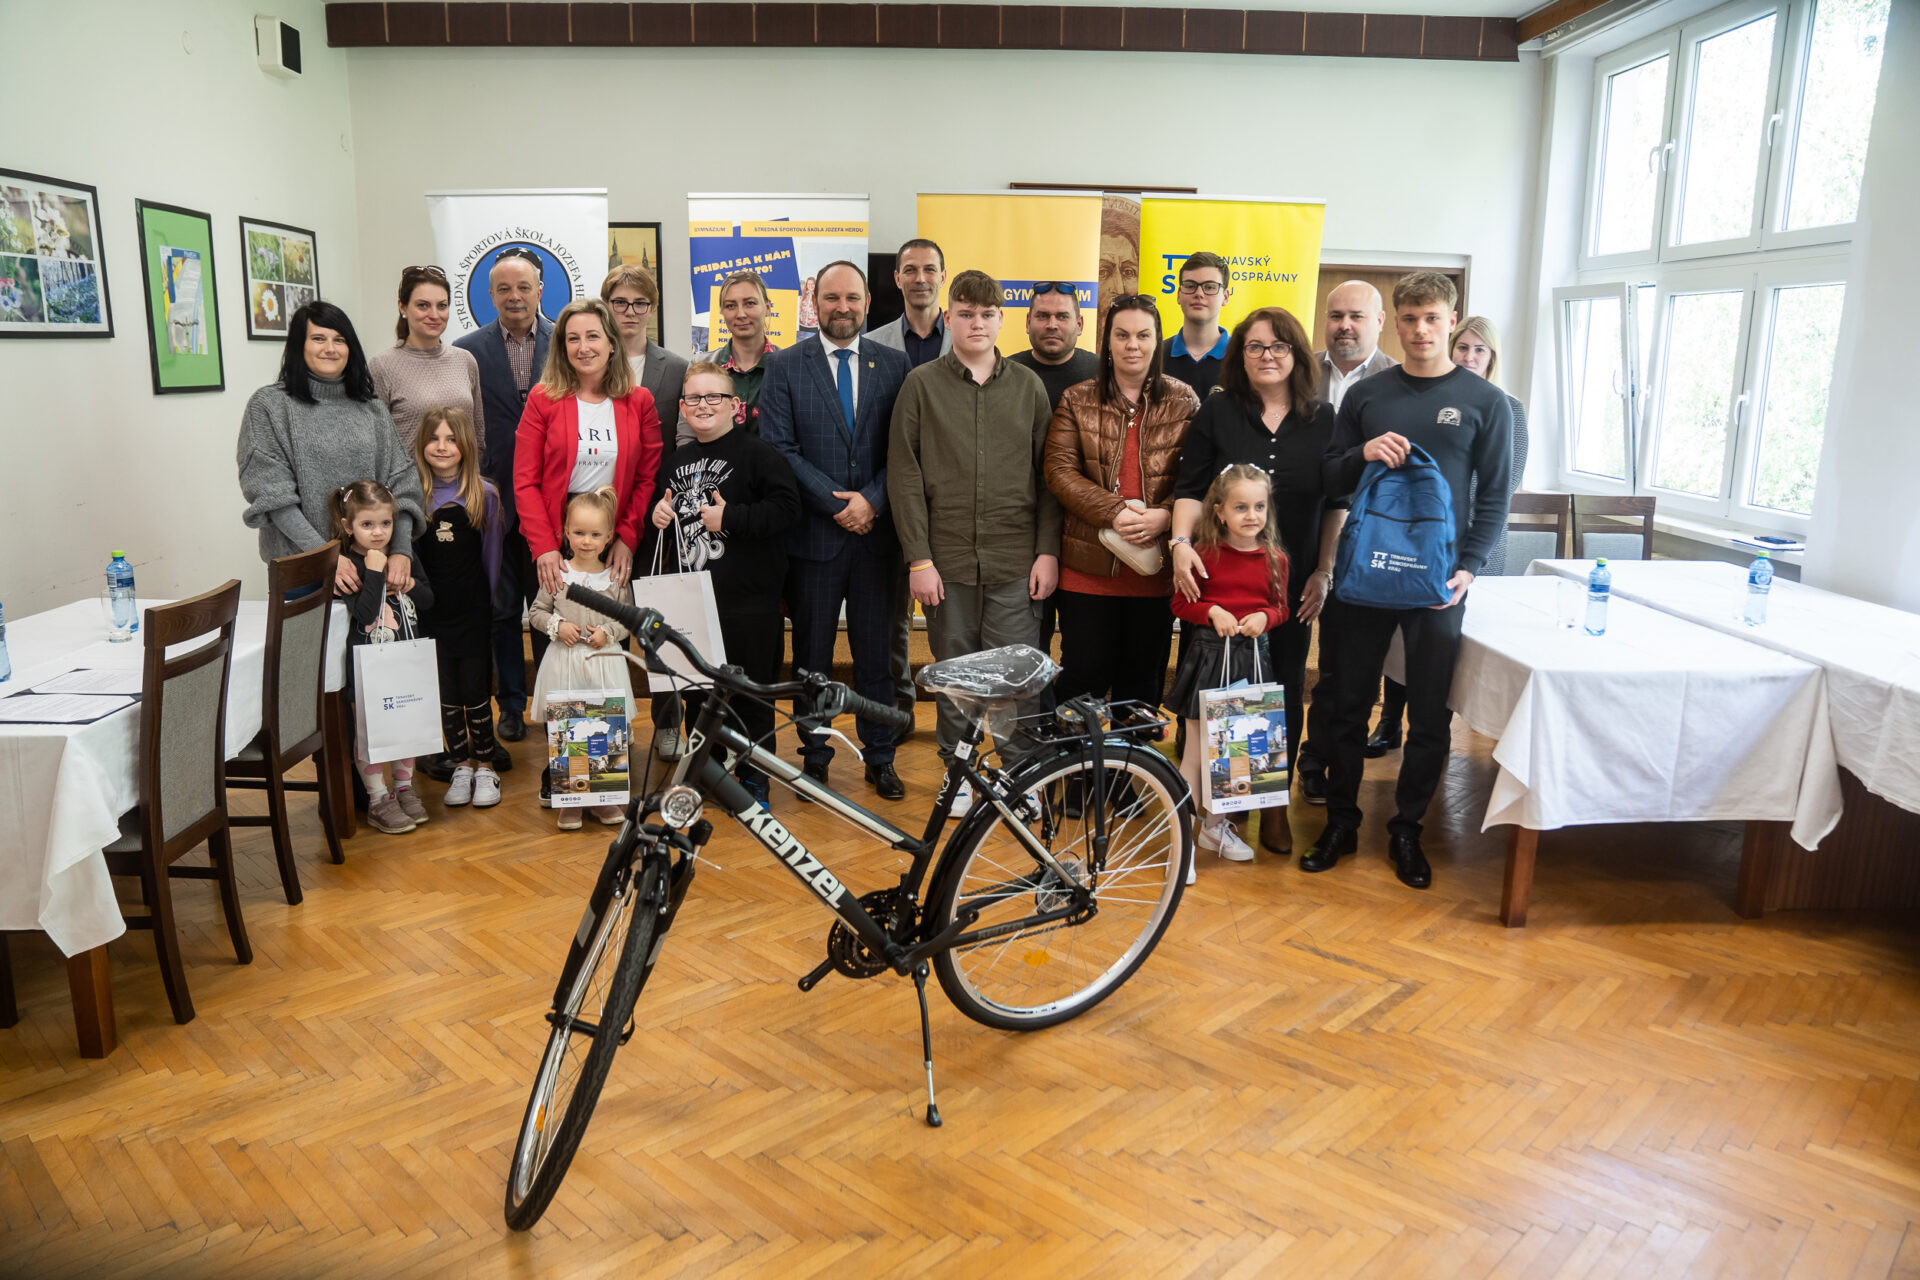 Župa ocenila víťazov súťaže Vráťme knihy do škôl v Trnavskom kraji